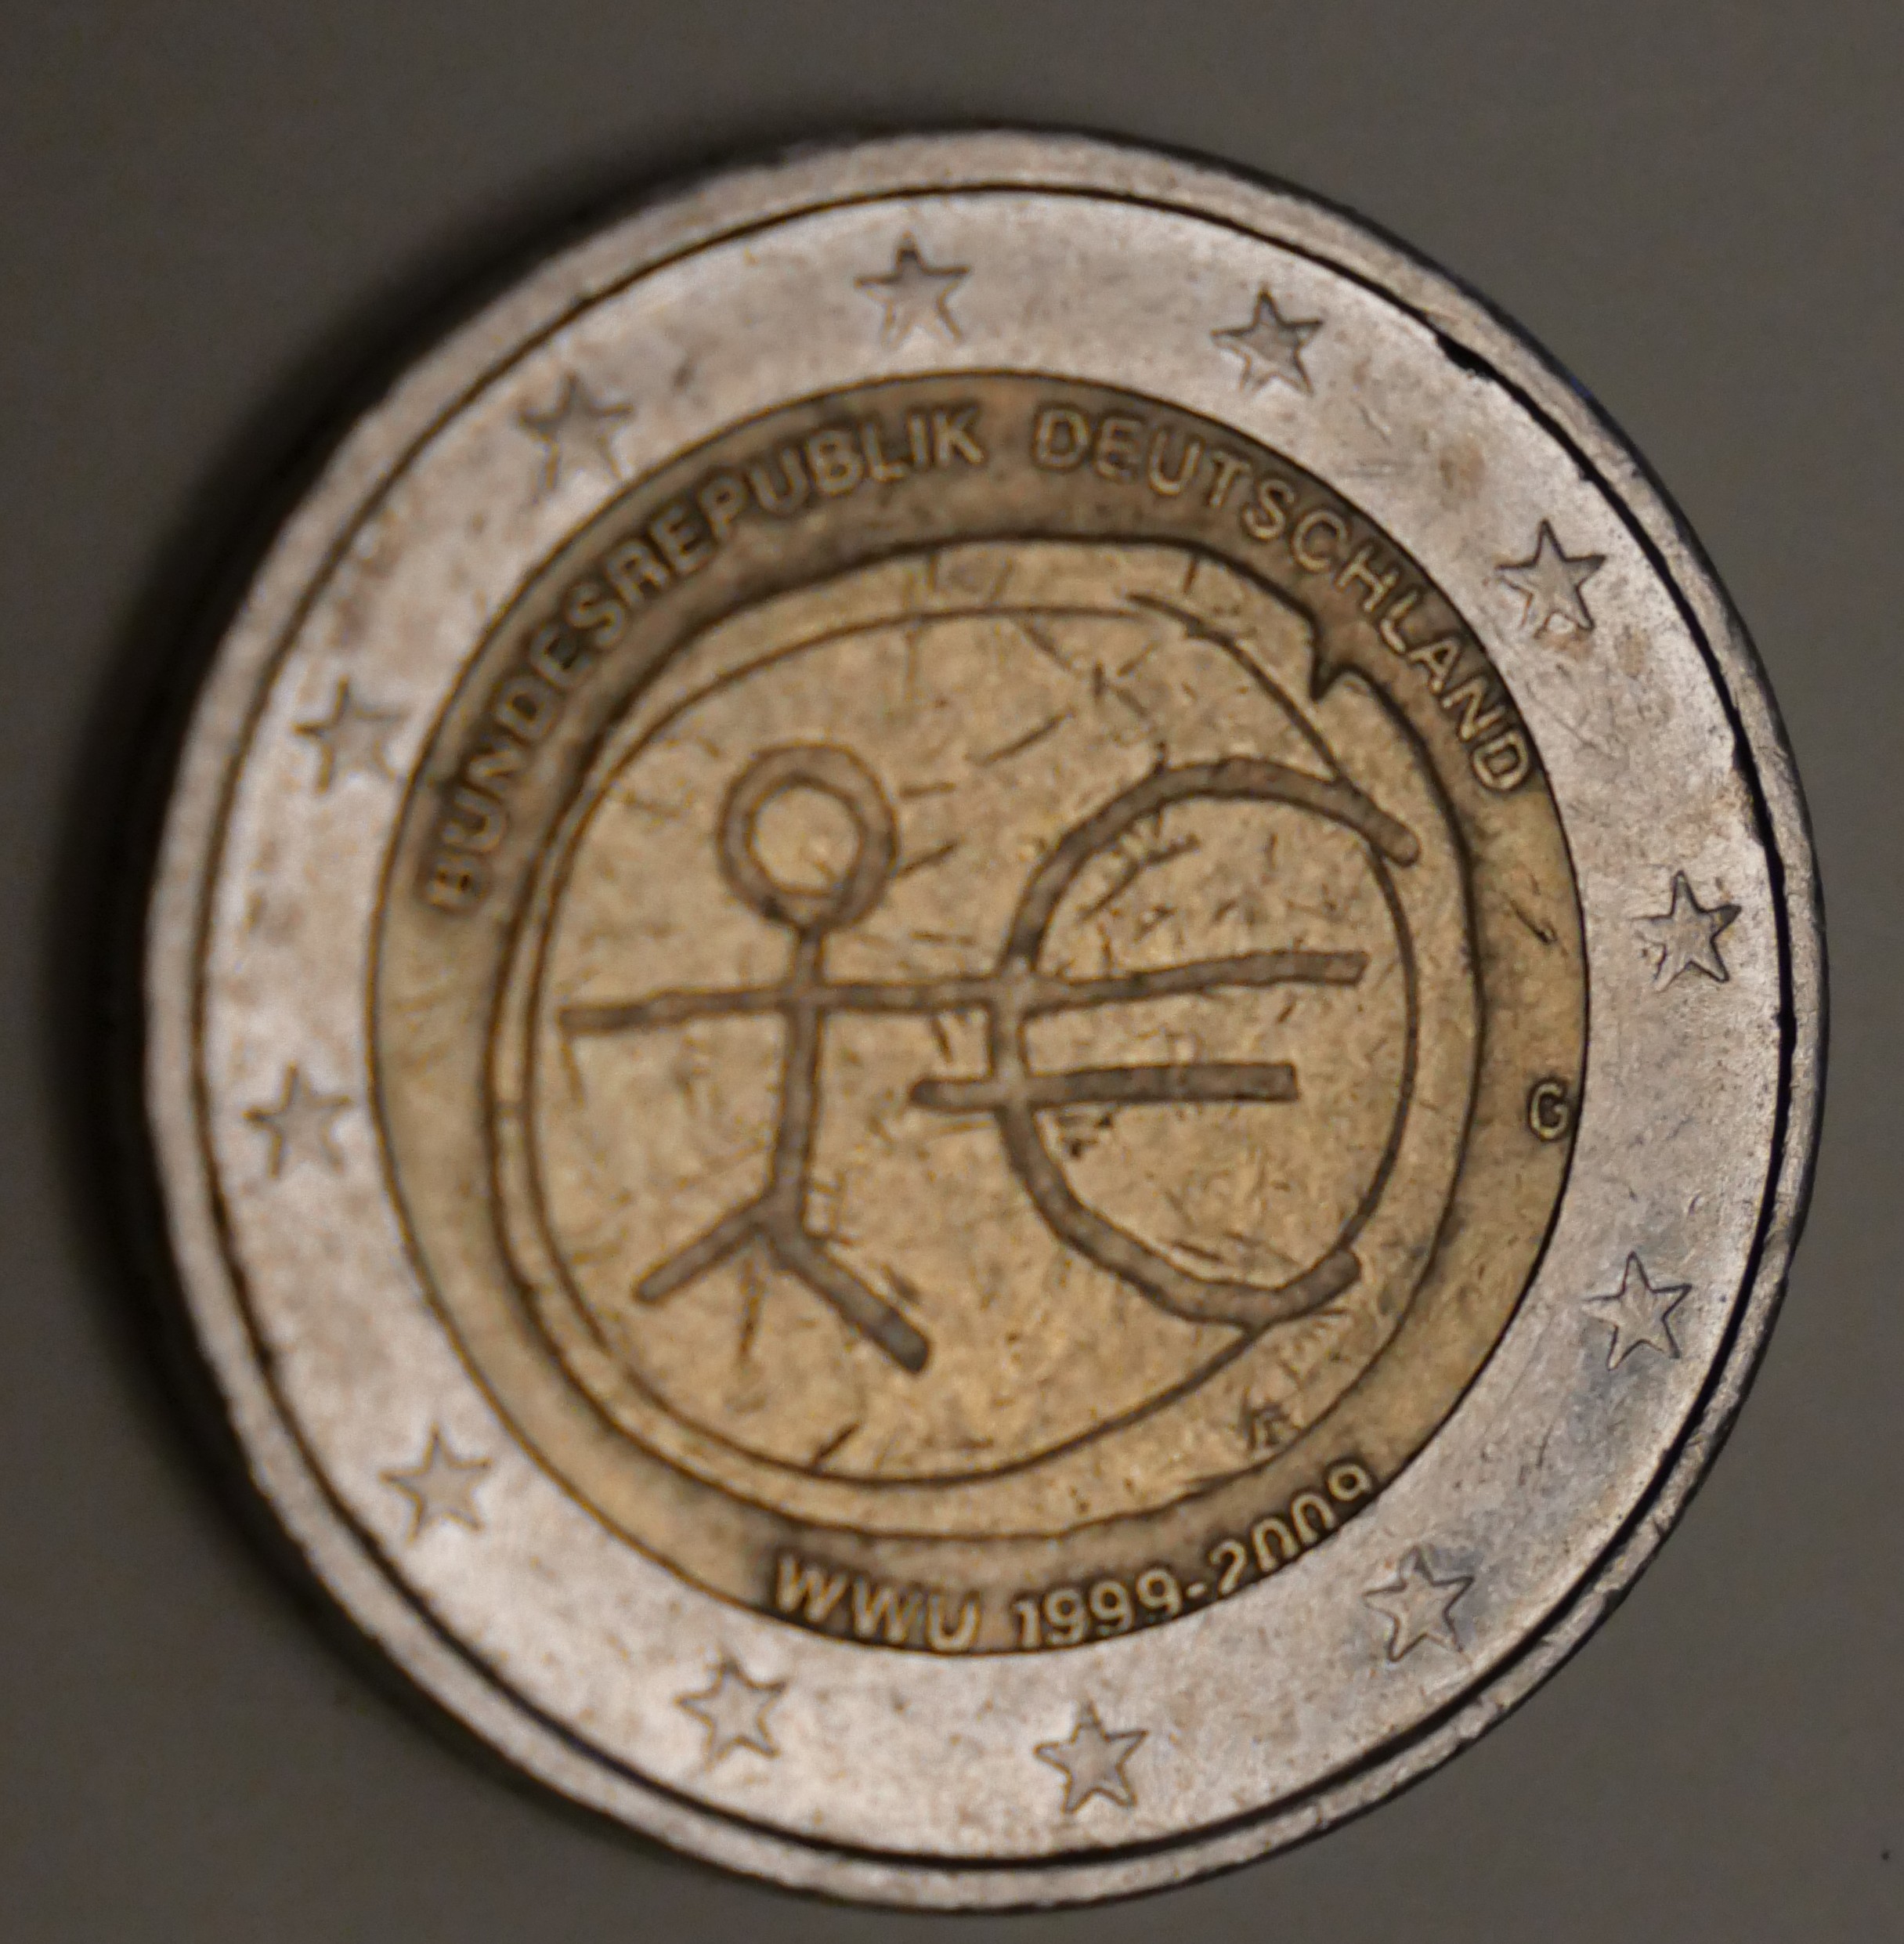 € 2 Mint-made errors  2€ Fehlprägung – Mint Error – BRD Jubiläumsmünze 1999 – 2009